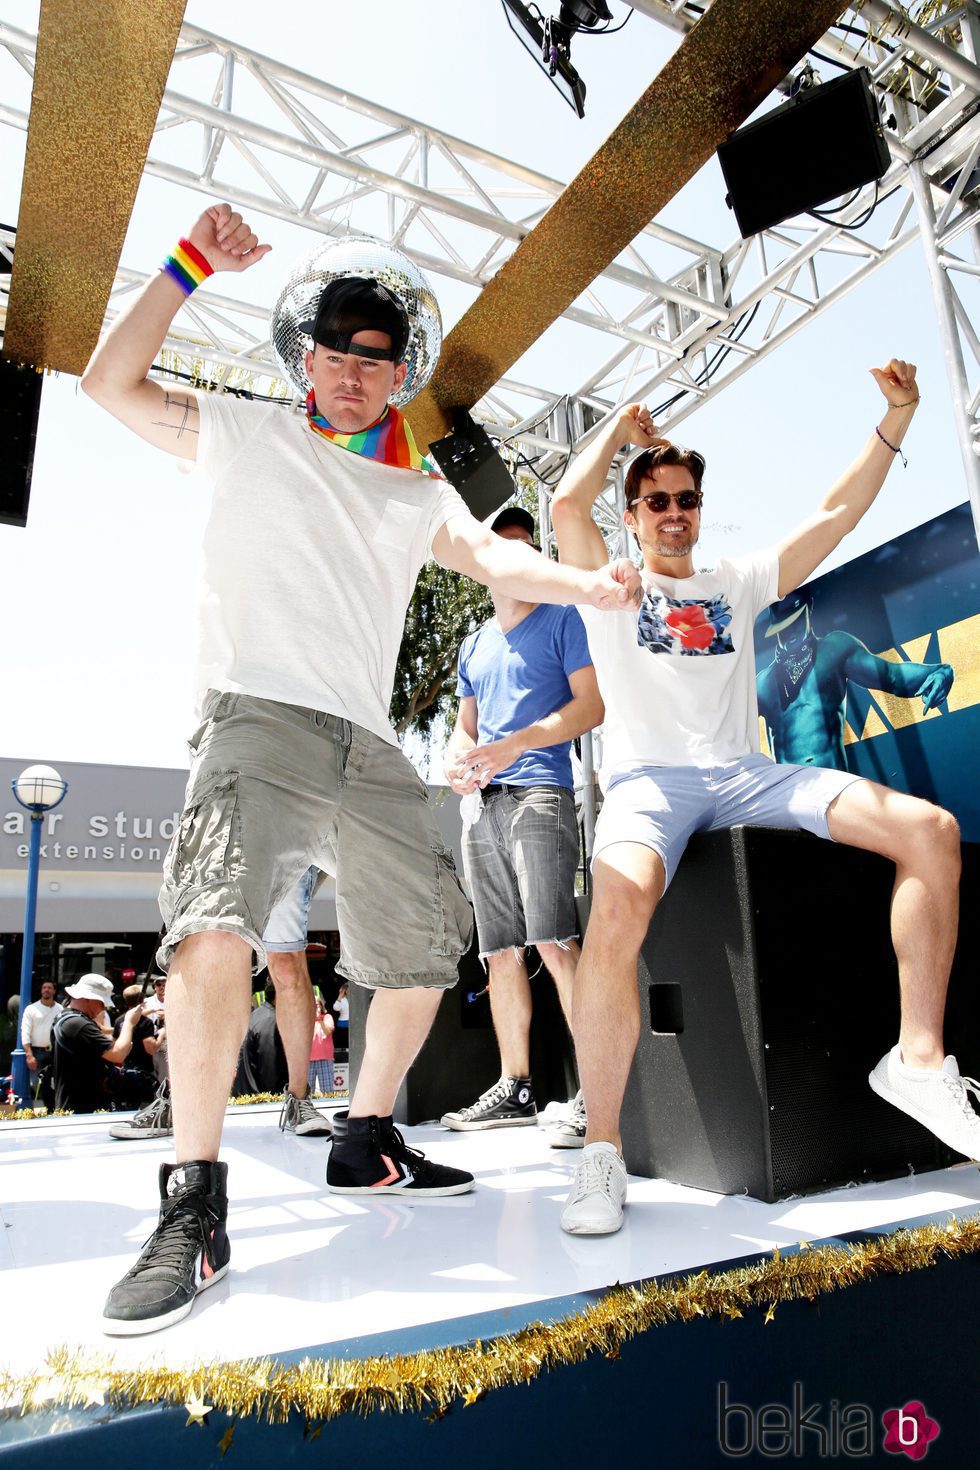 Channing Tatum y Matt Bomer promocionan 'Magic Mike XXL' bailando el día del Orgullo en Los Ángeles